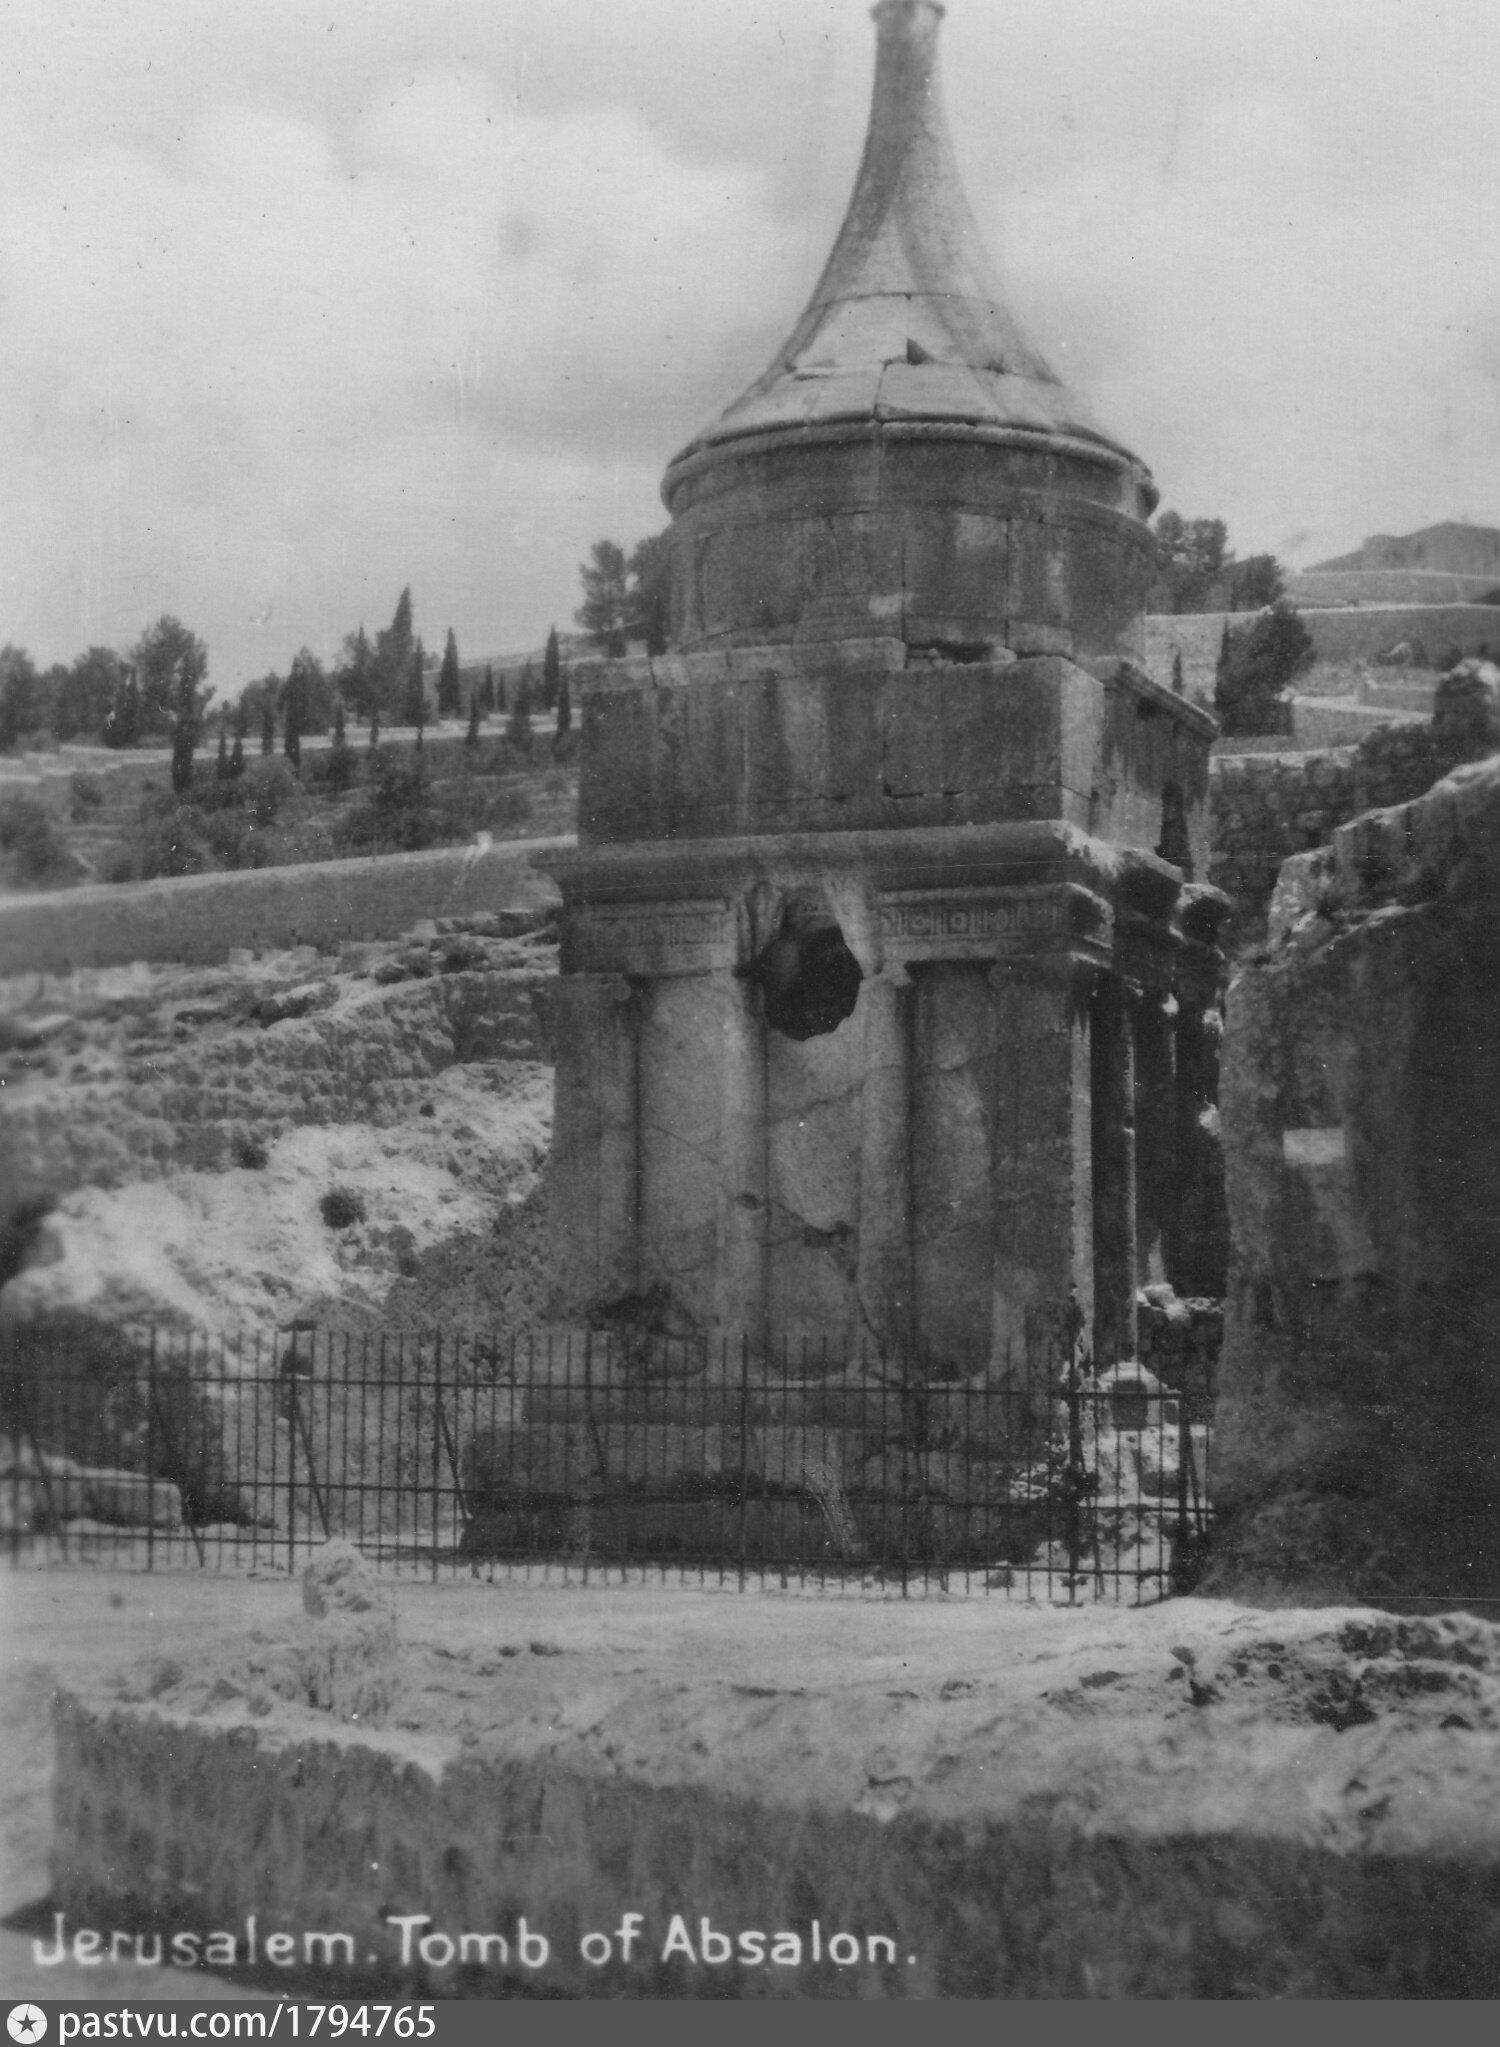 Avshalom Tomb